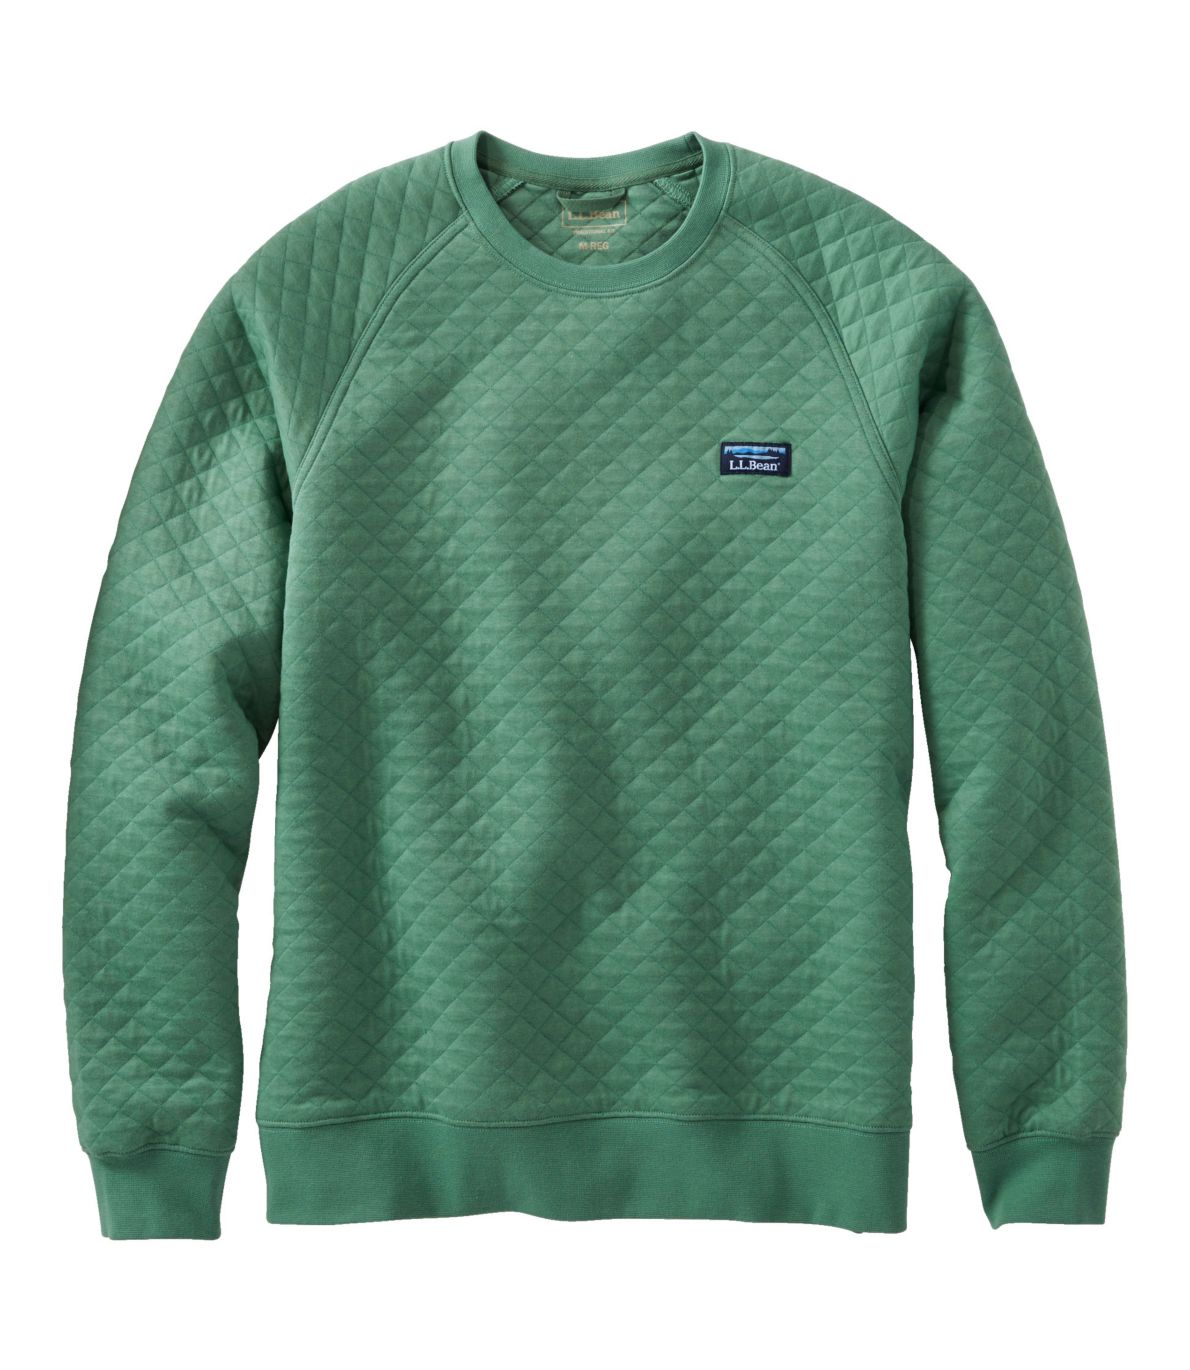 Men's Quilted Sweatshirt, Crewneck